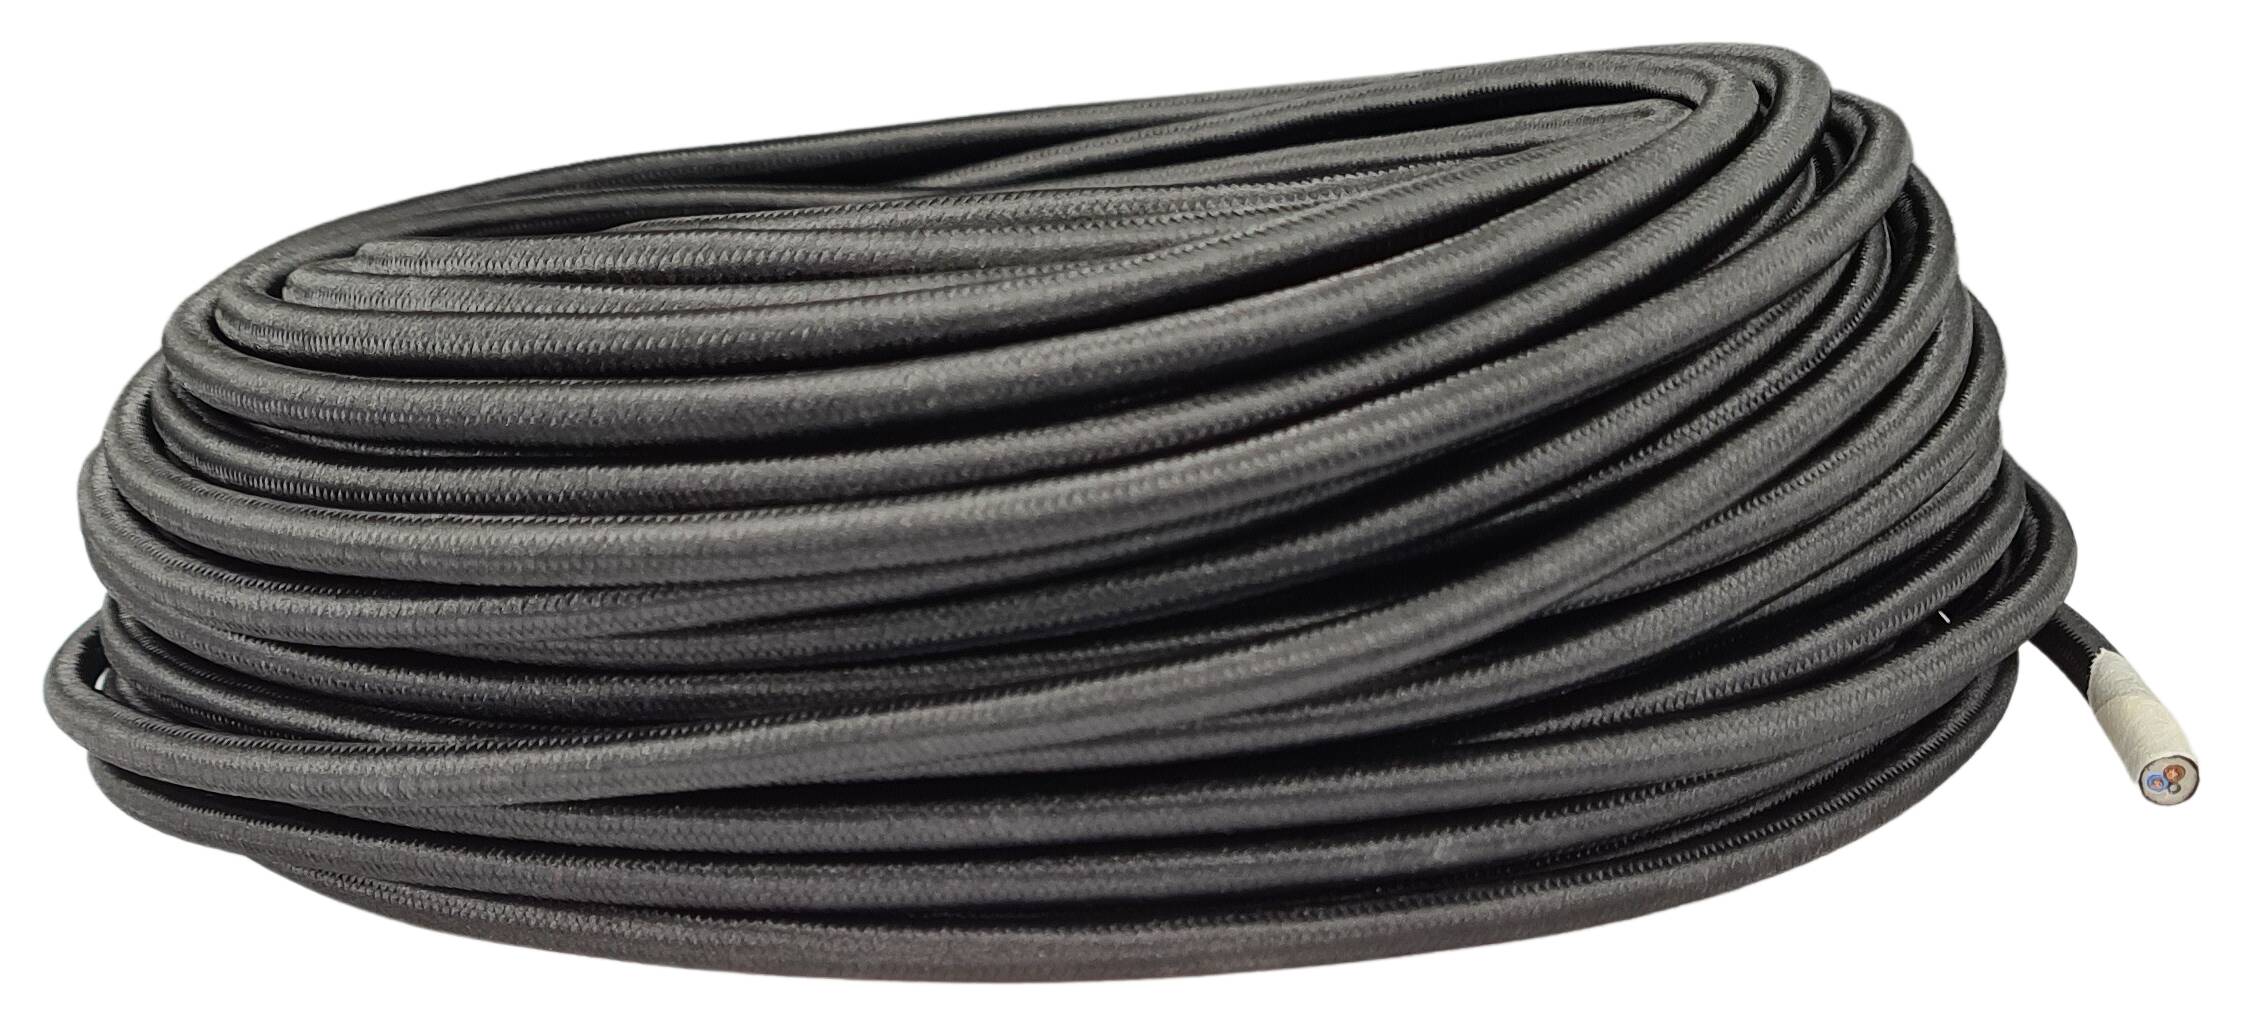 Kabel m. Stahlseil 2x0,75 HO3VV-F PVC textilummantelt RAL 9005 schwarz